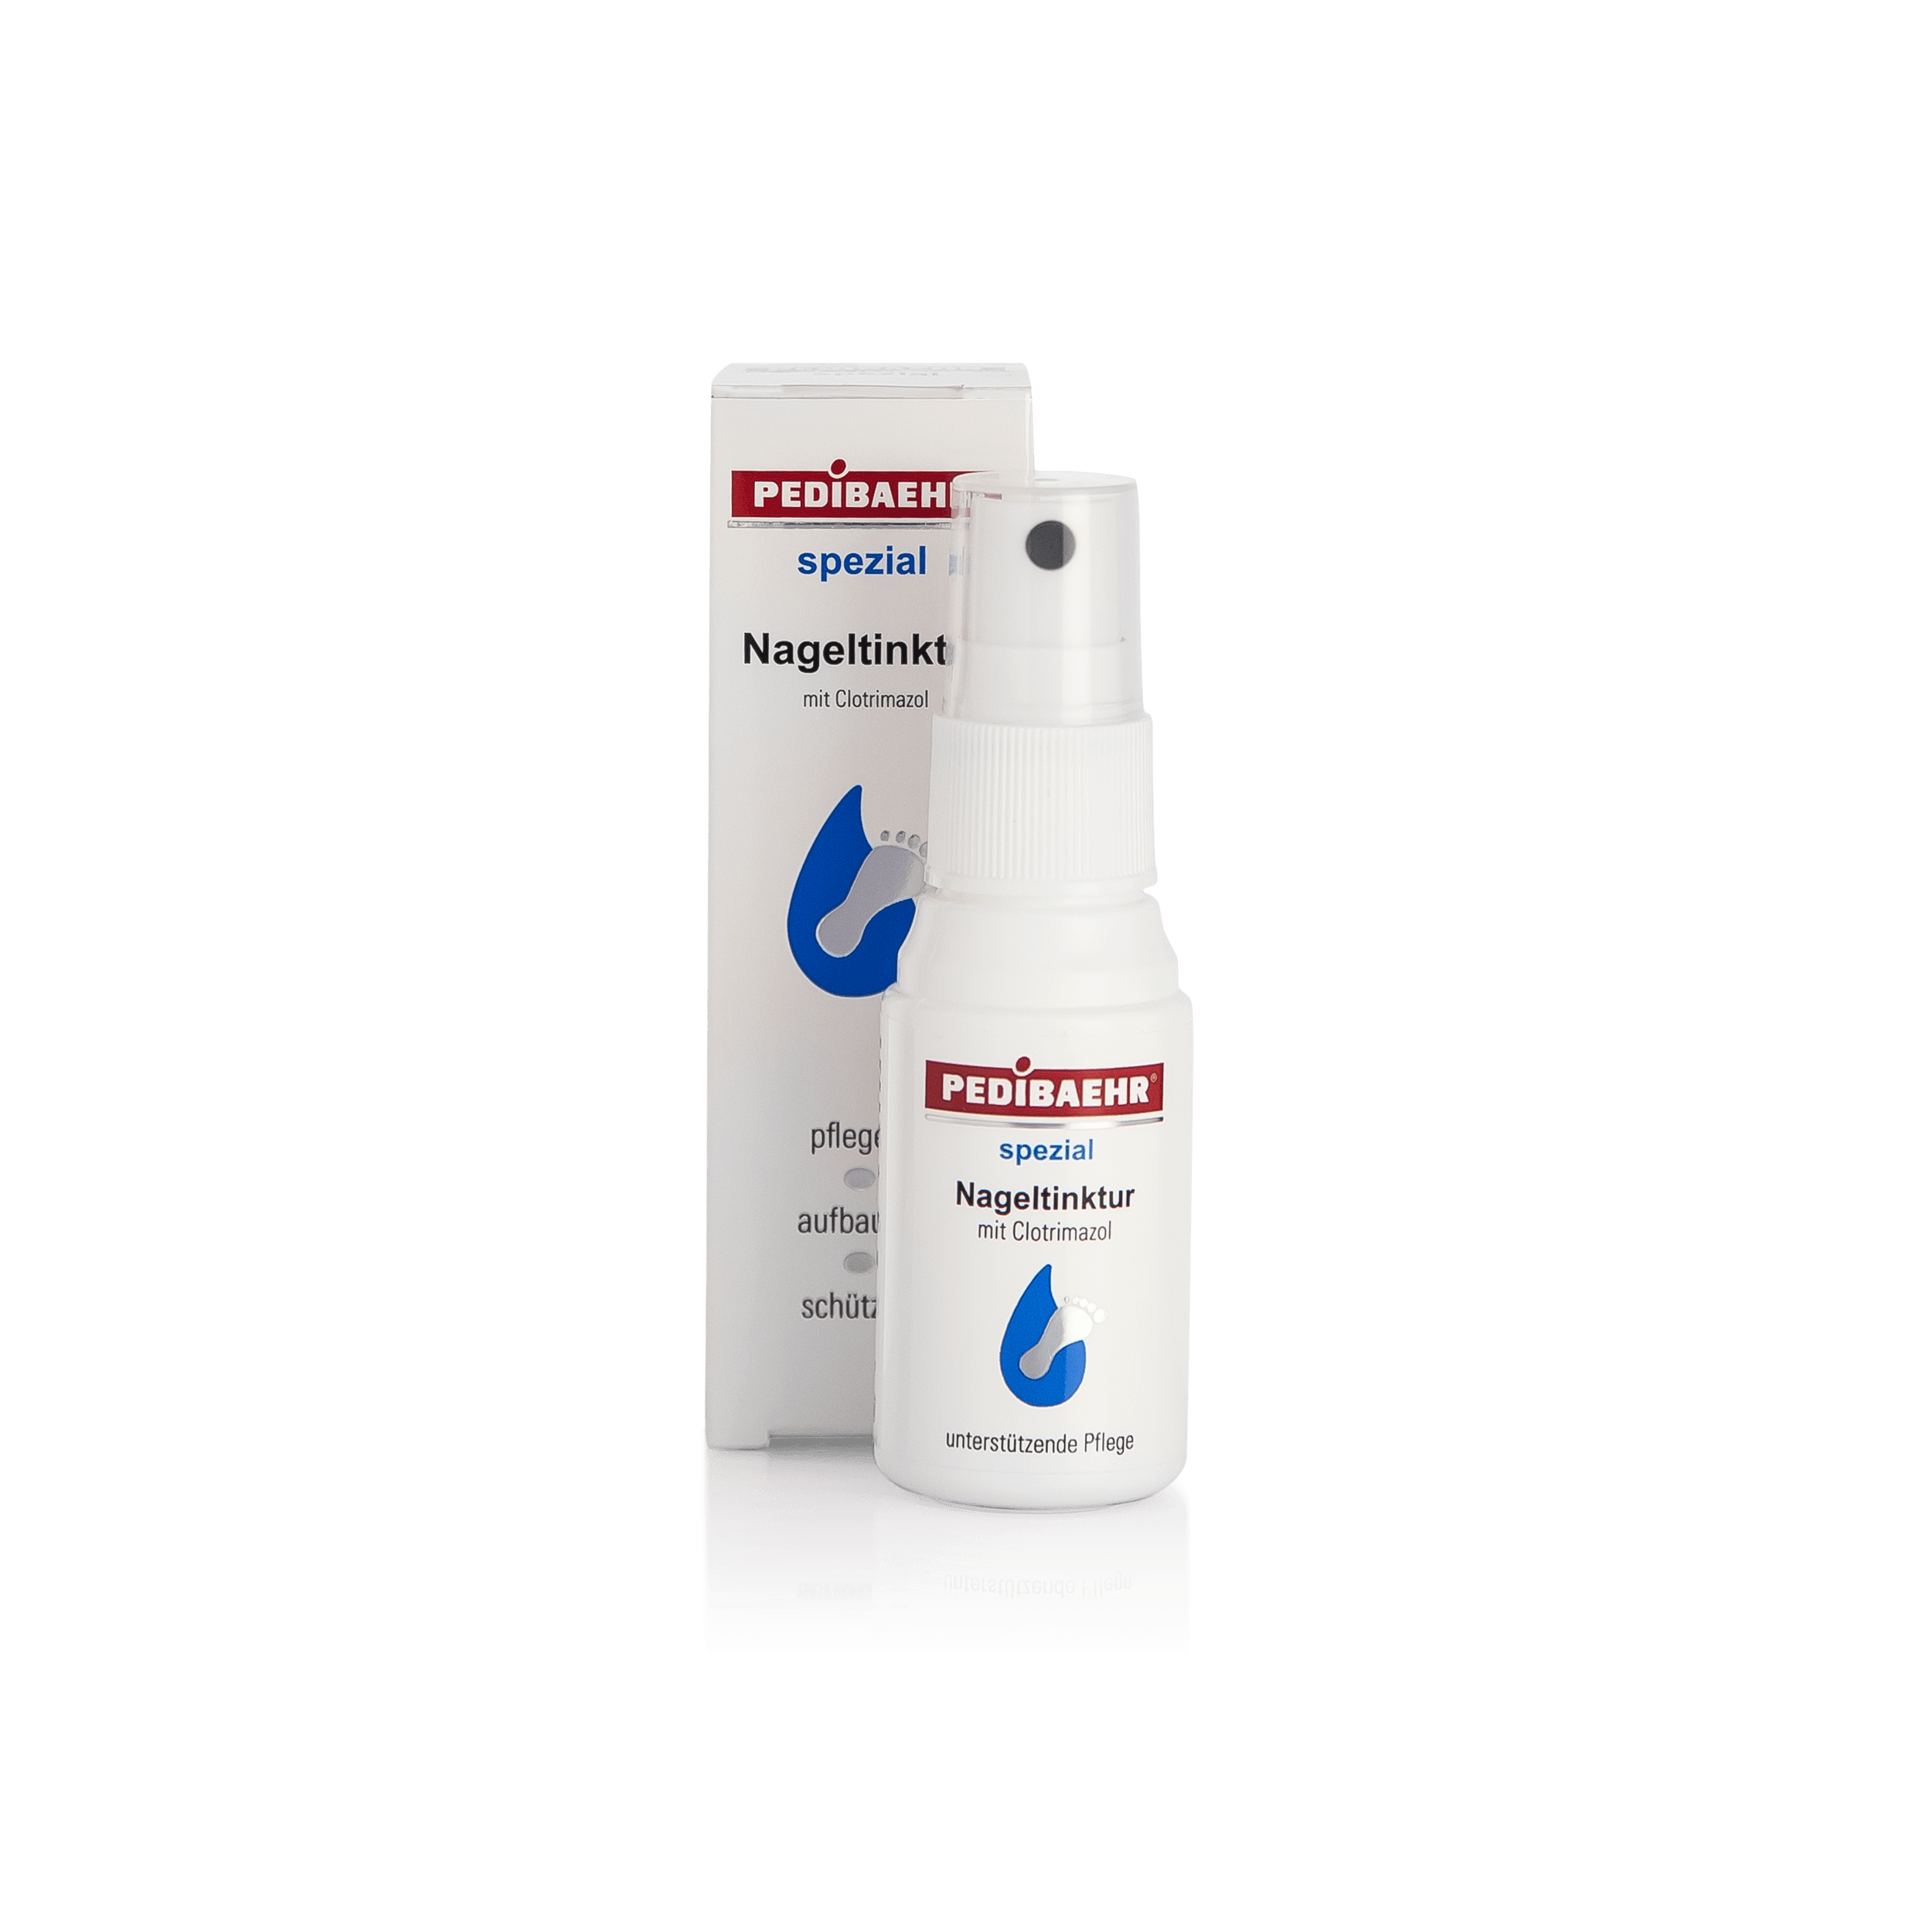 PEDIBAEHR Nageltinktur mit Clotrimazol 30 ml